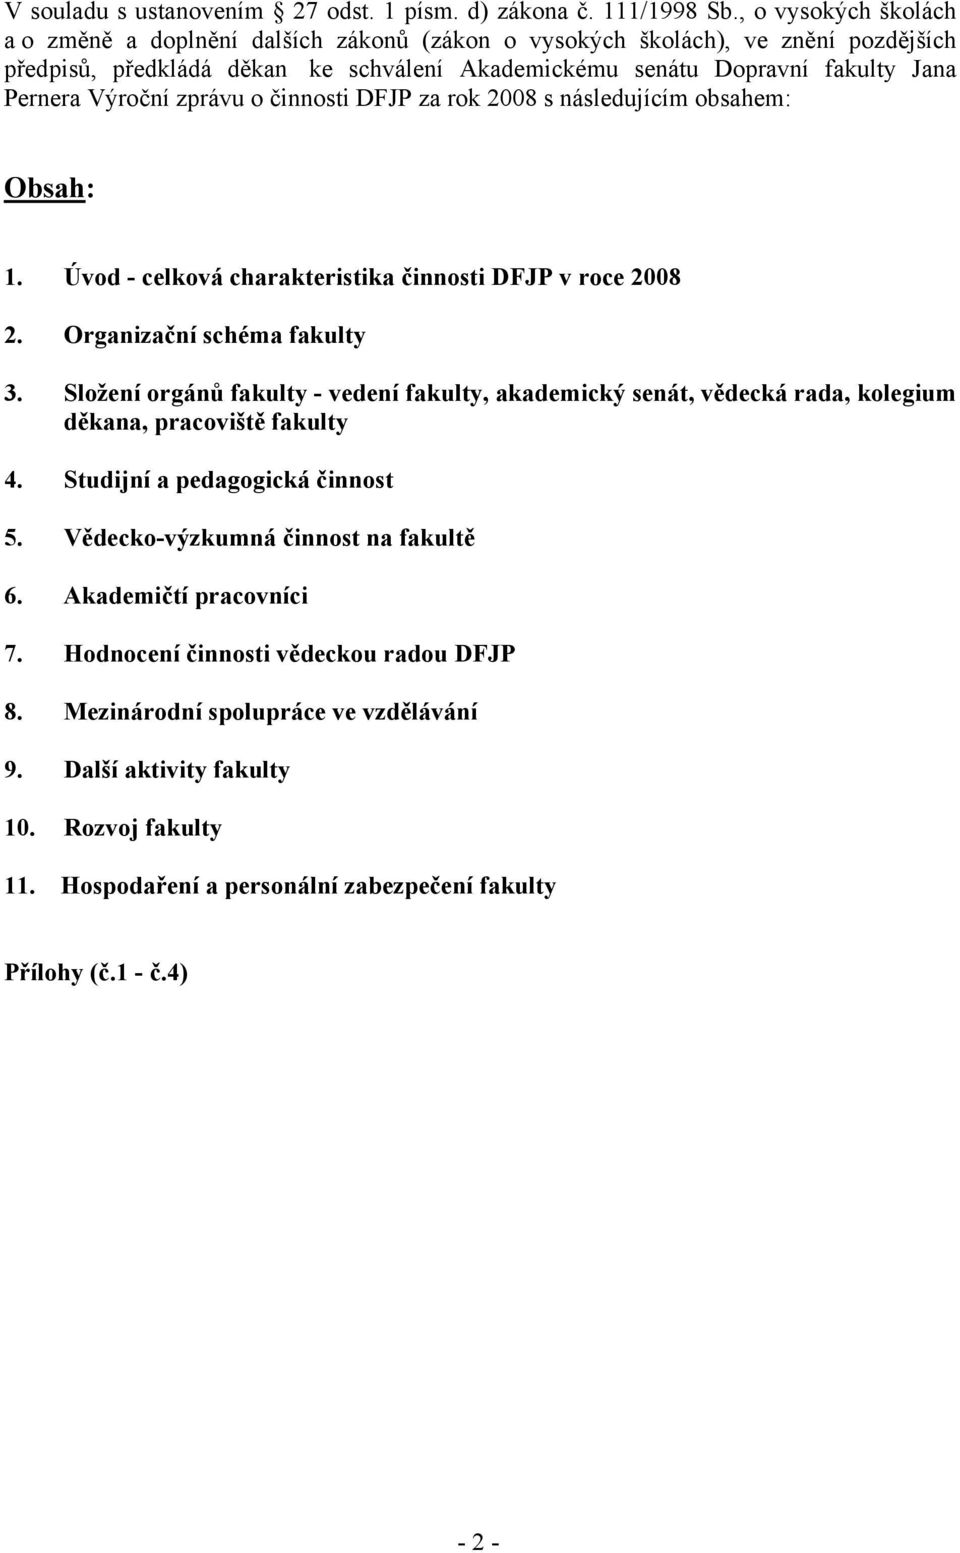 Výroční zprávu o činnosti DFJP za rok 2008 s následujícím obsahem: Obsah: 1. Úvod - celková charakteristika činnosti DFJP v roce 2008 2. Organizační schéma fakulty 3.